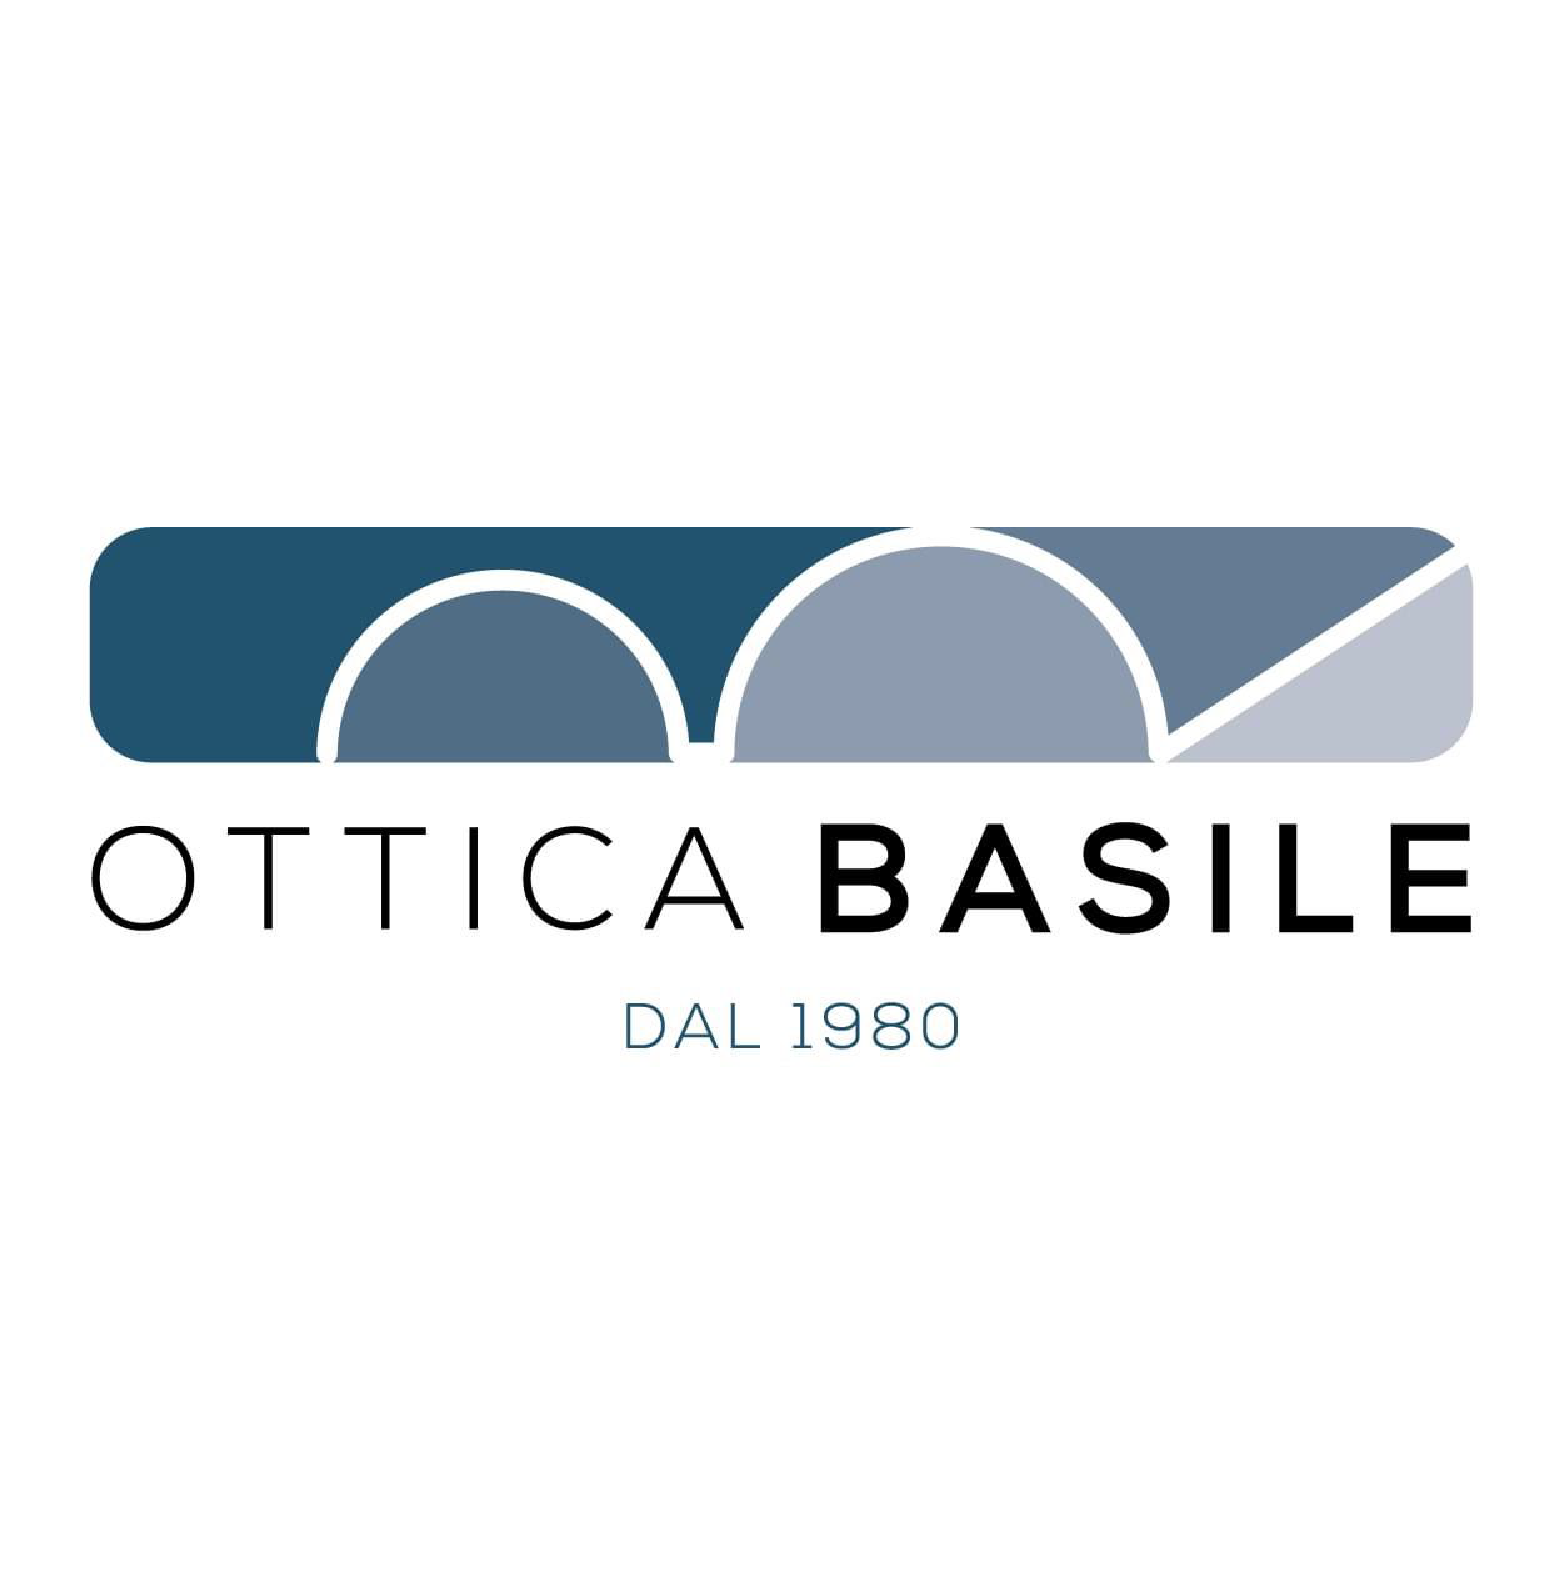 Ottica Basile